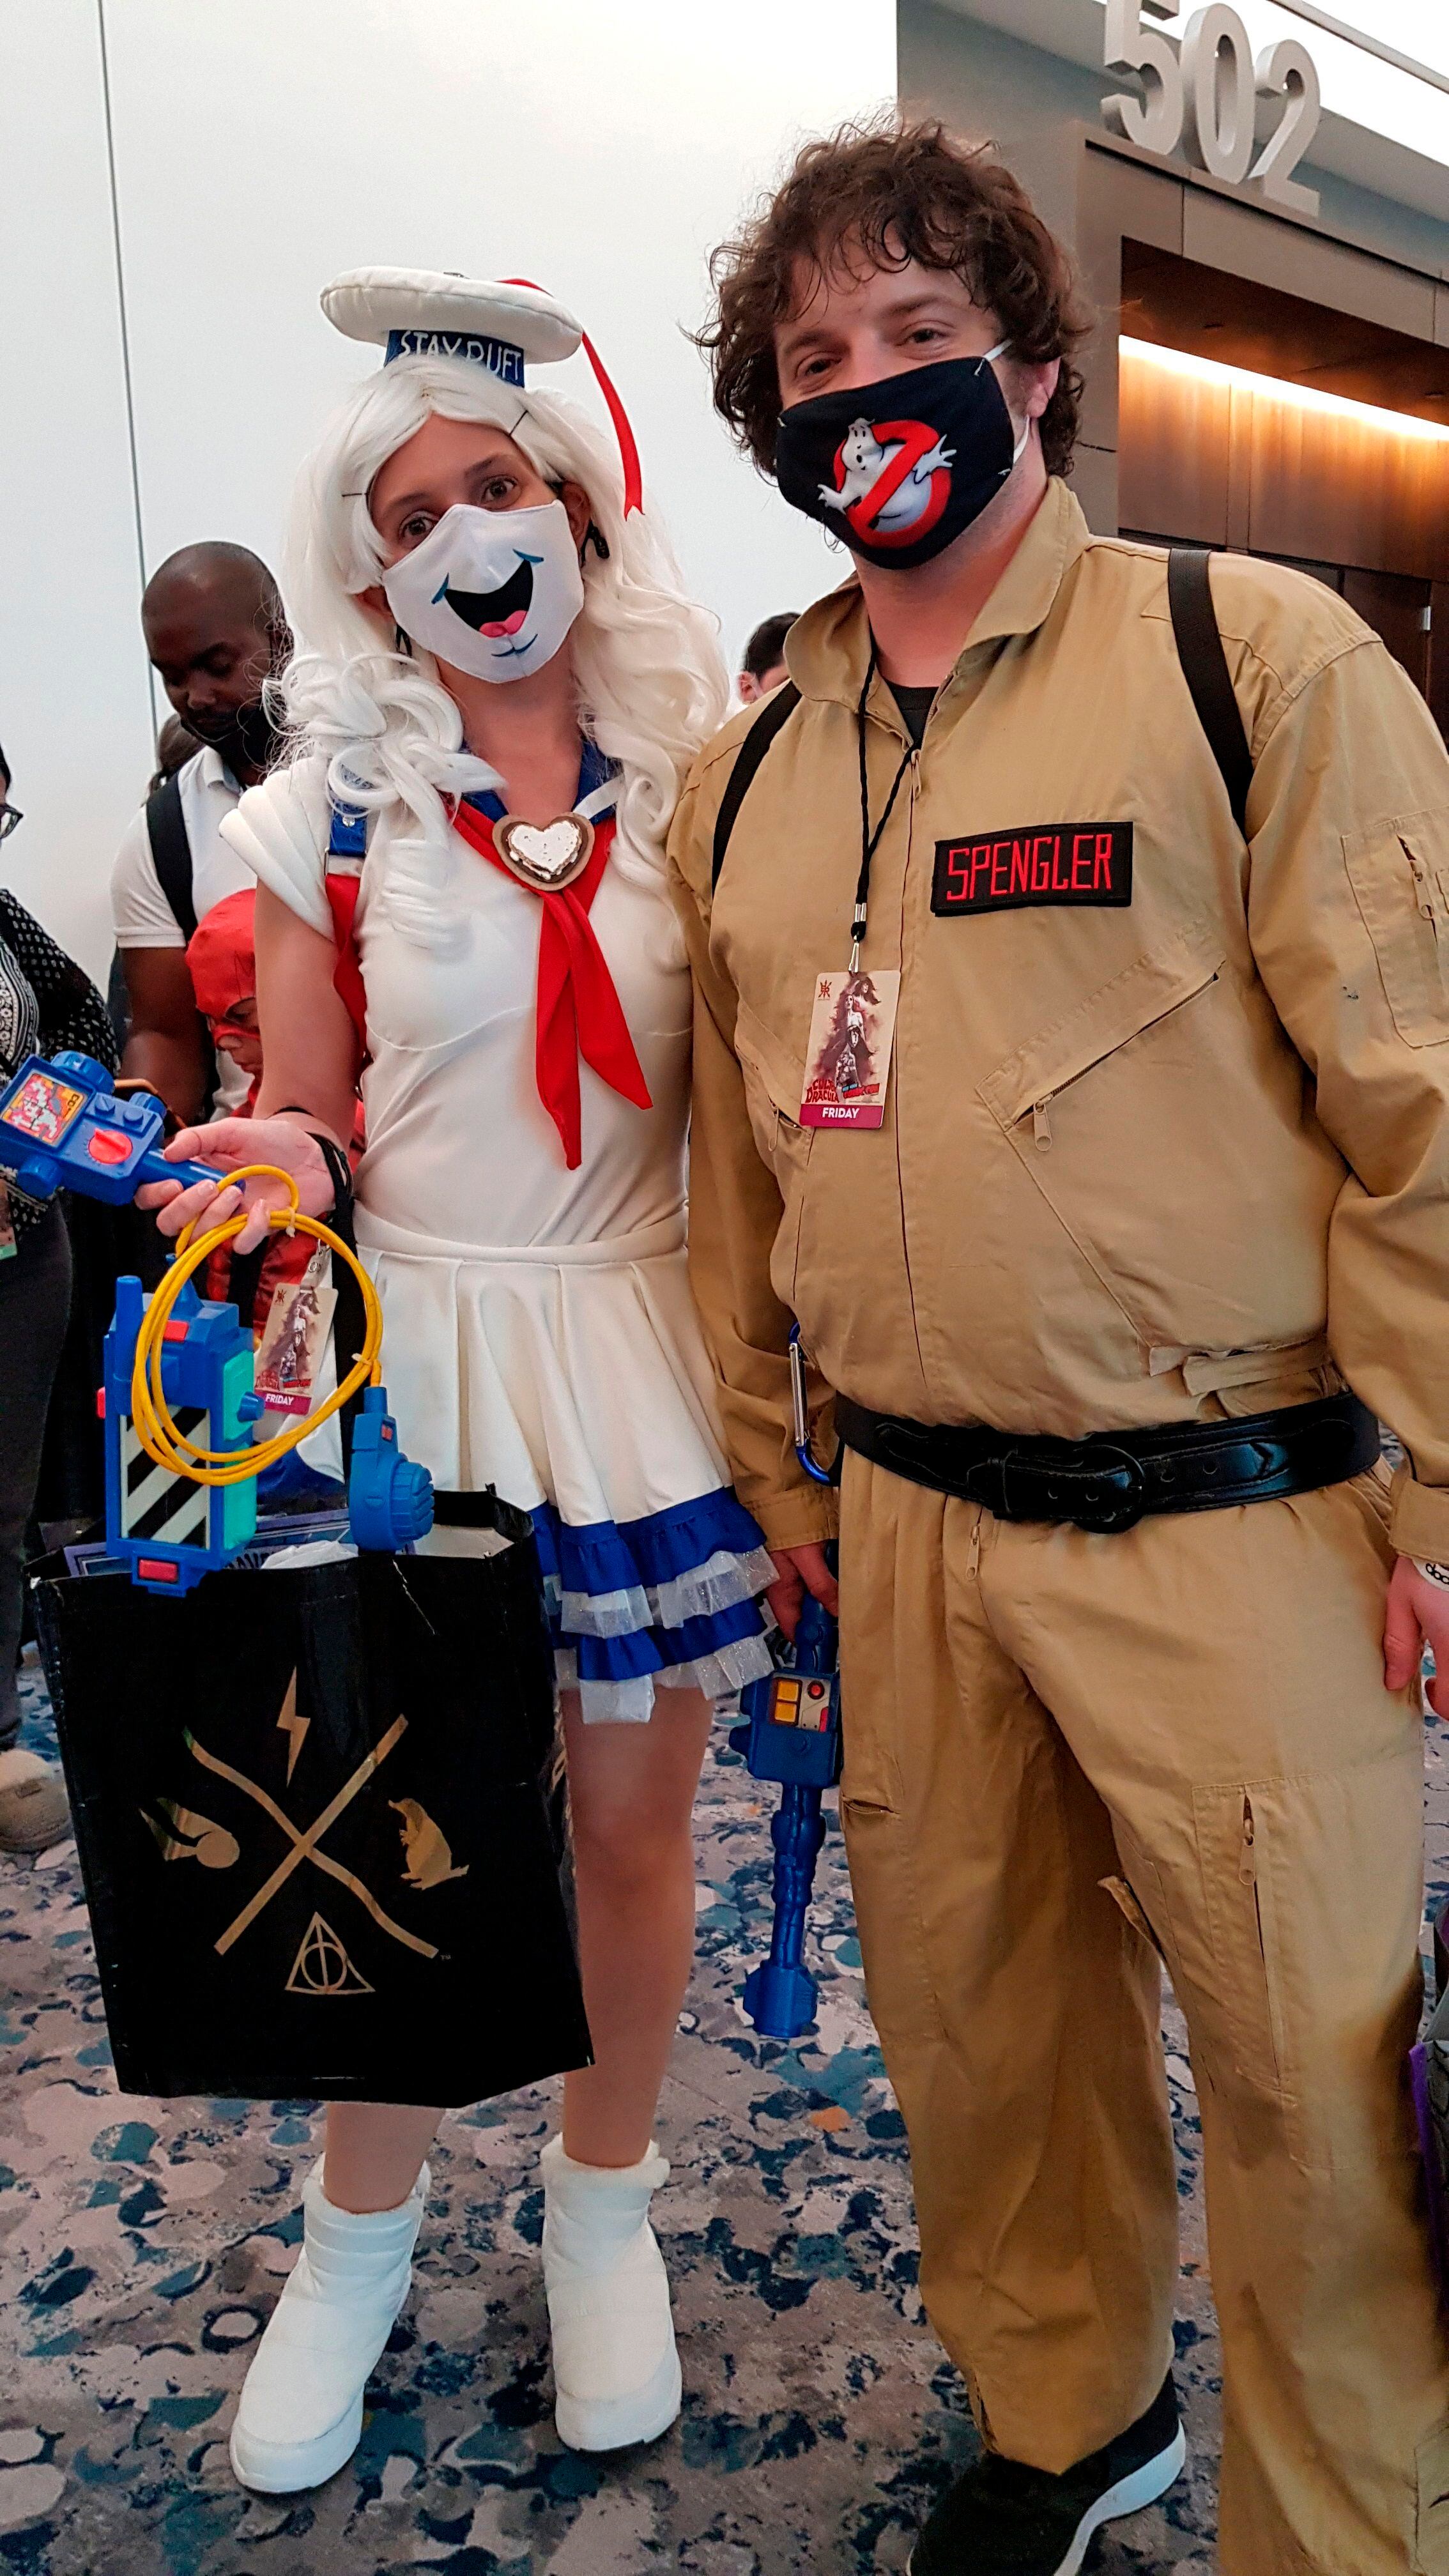 Grupos de personas disfrazadas como los protagonistas de la película "Ghostbusters" (Cazafantasmas) esperan la llegada de los actores para la proyección de la nueva cinta ayer, en el Comic-Con de Nueva York (EEUU).